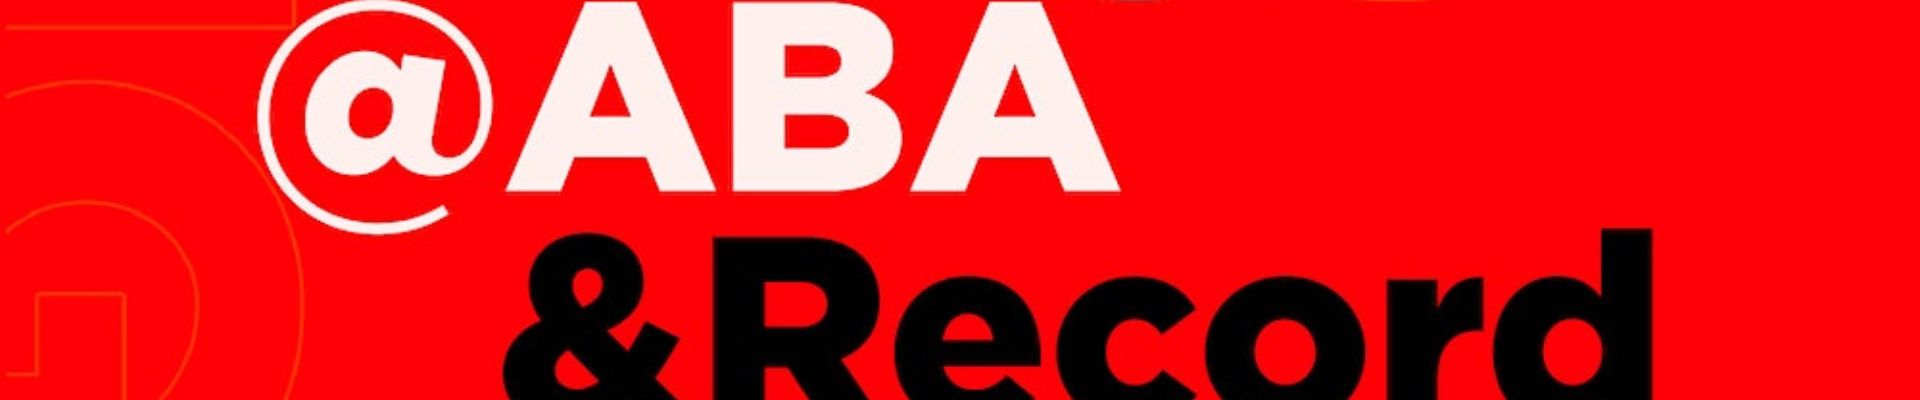 Branding@ABA & Record TV, com profissionais renomados do setor